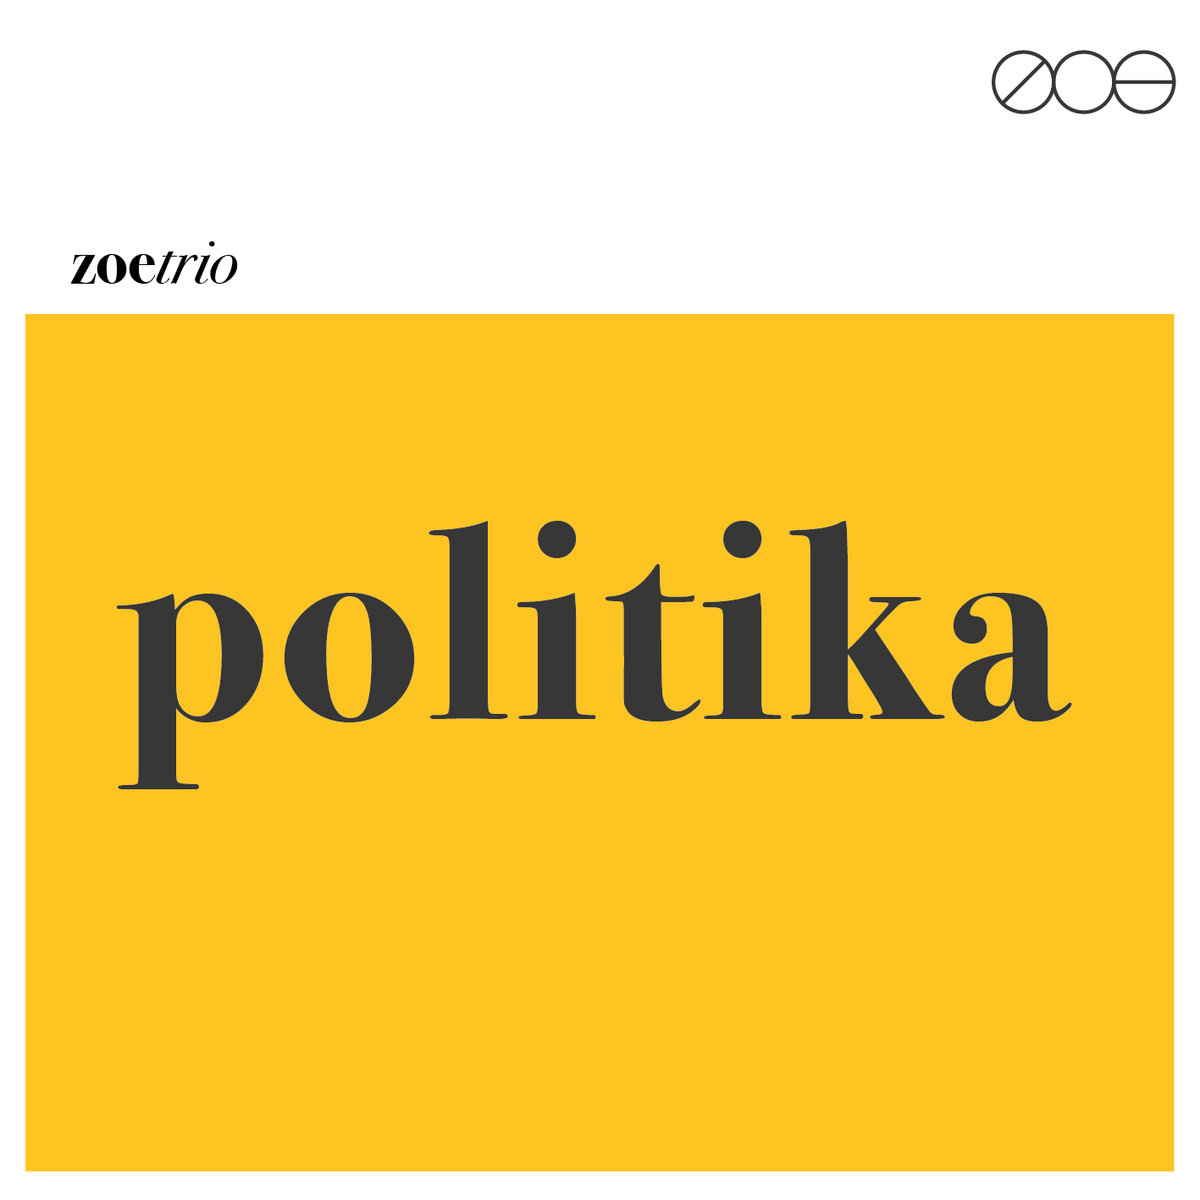 ZOE - Politika cover 